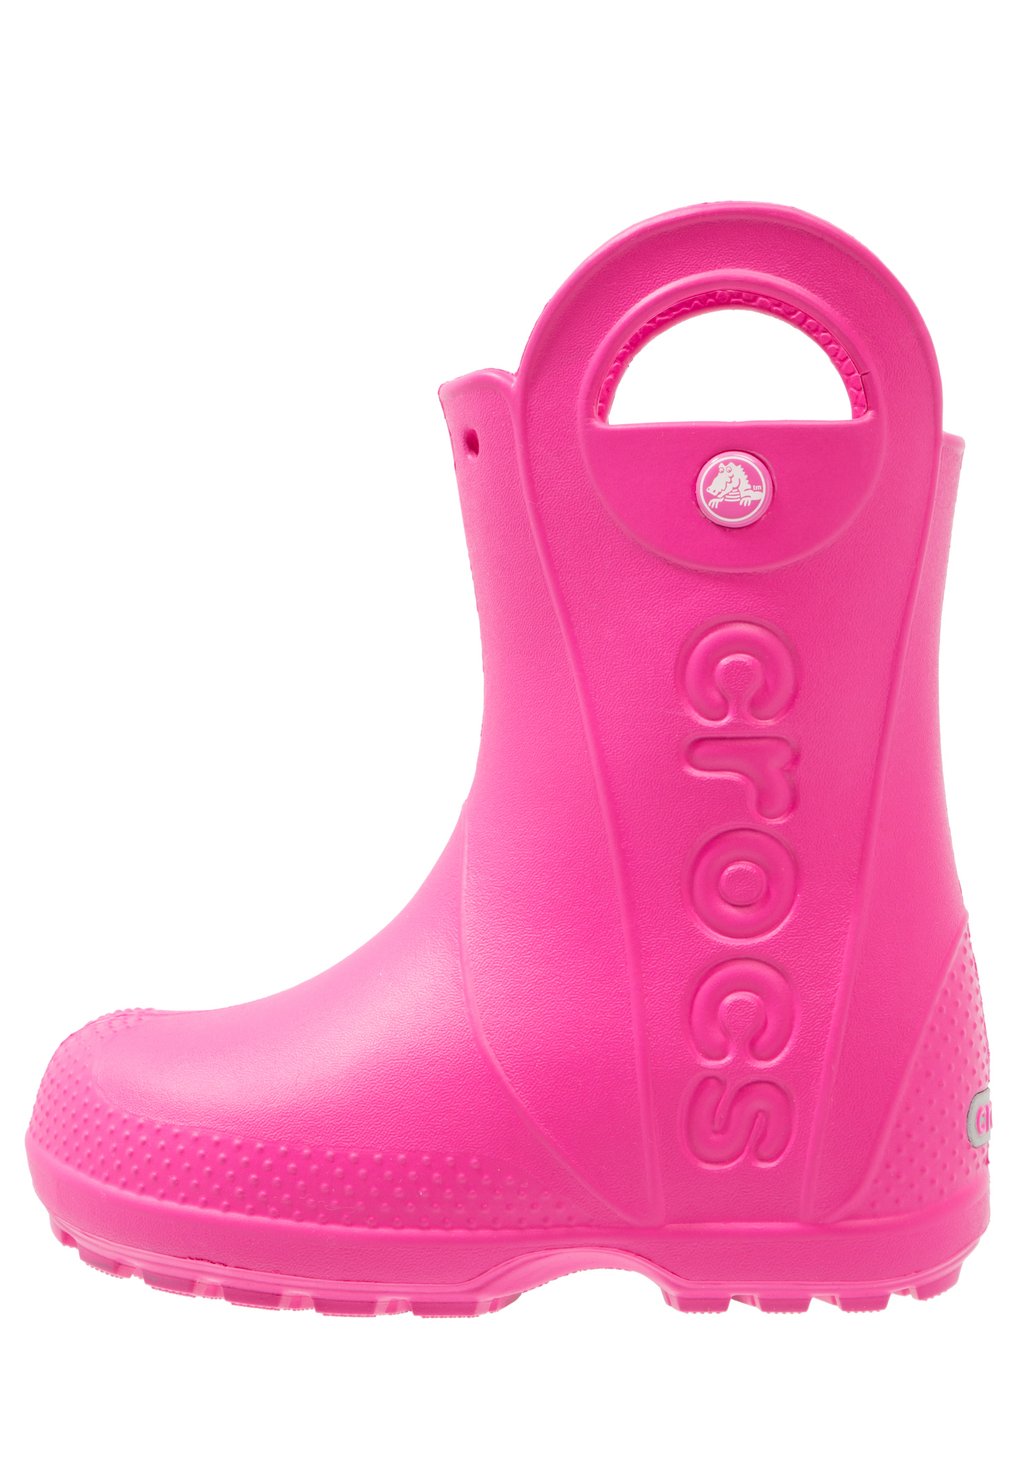 Резиновые сапоги Handle It Rain Boot Kids Crocs, цвет candy pink цена и фото